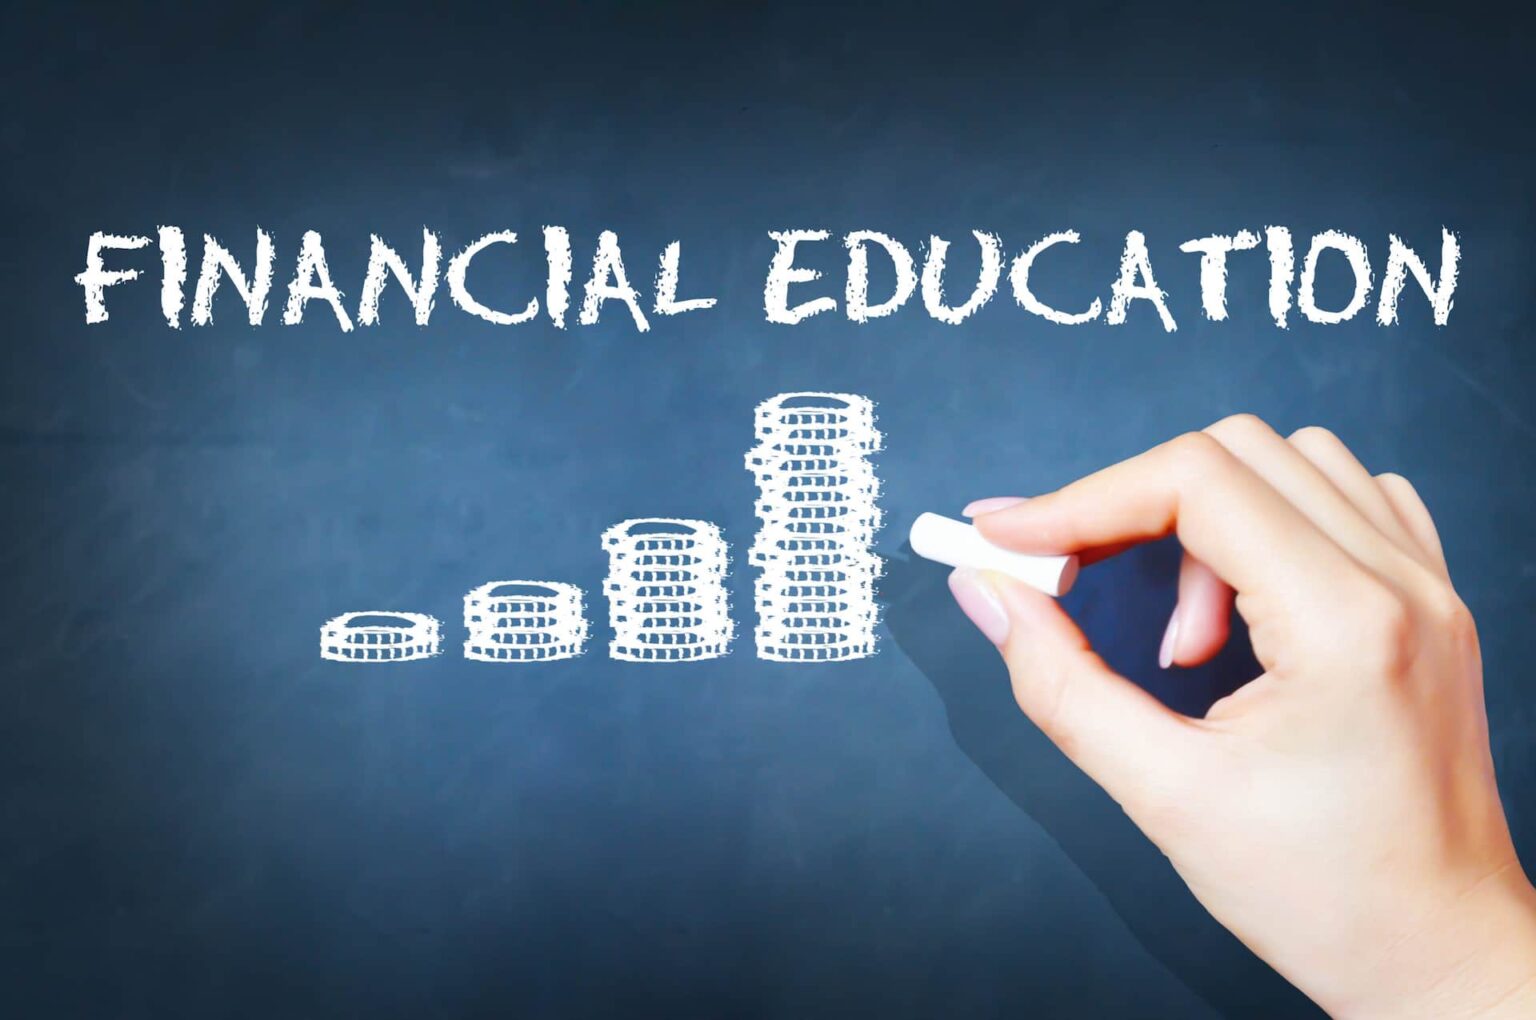 Financial education written on a blackboard.